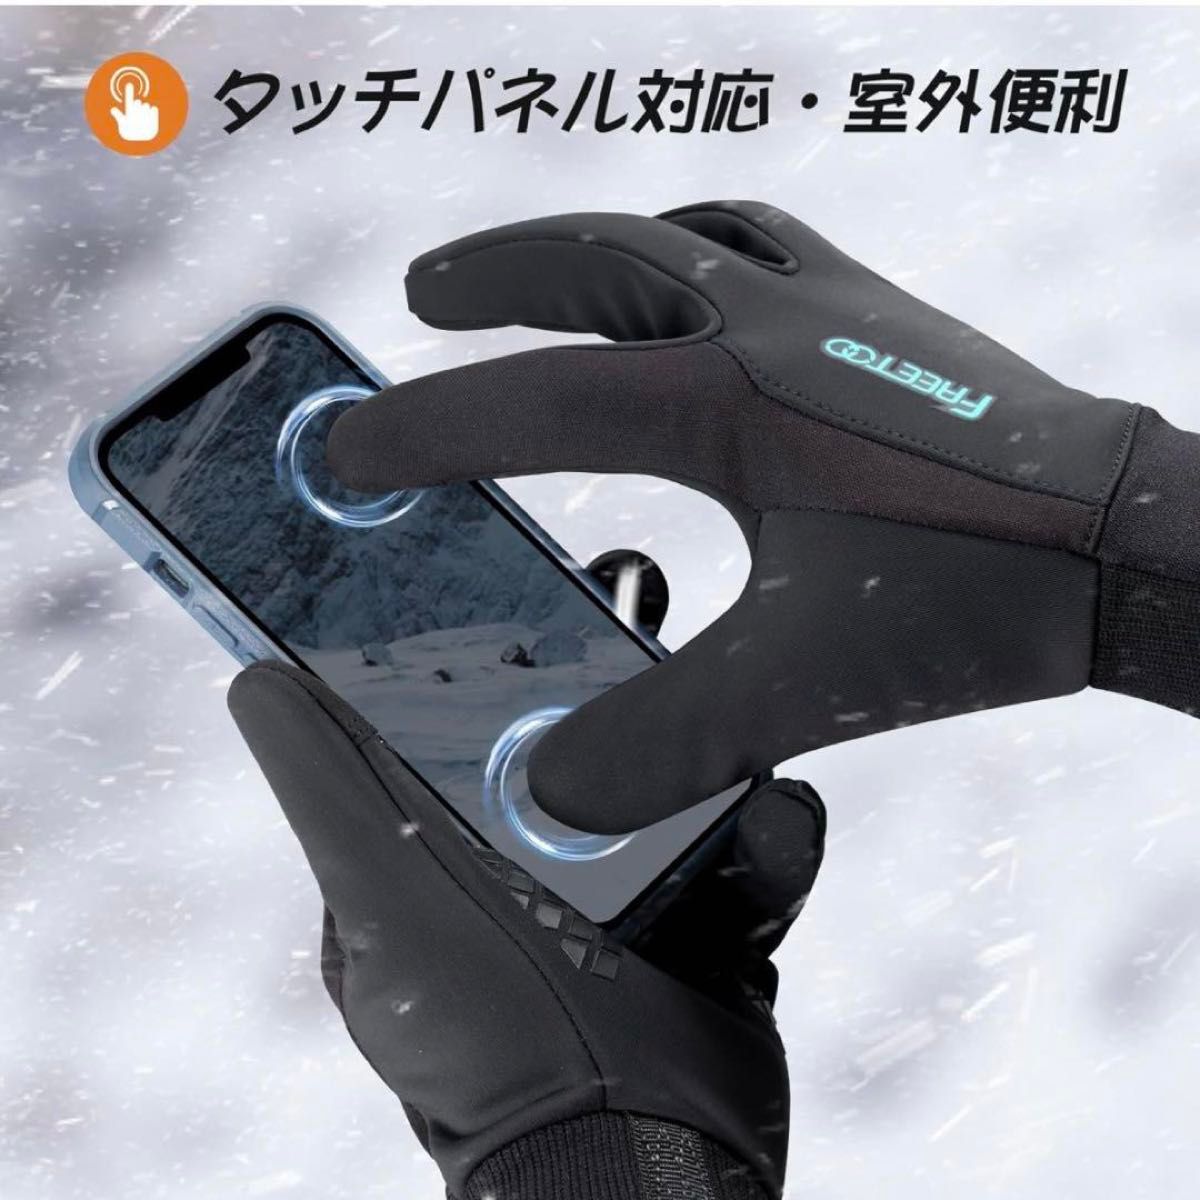 防寒手袋 メンズ 発熱綿素材 一瞬暖かく 保温 撥水加工 −10℃防寒 冬用